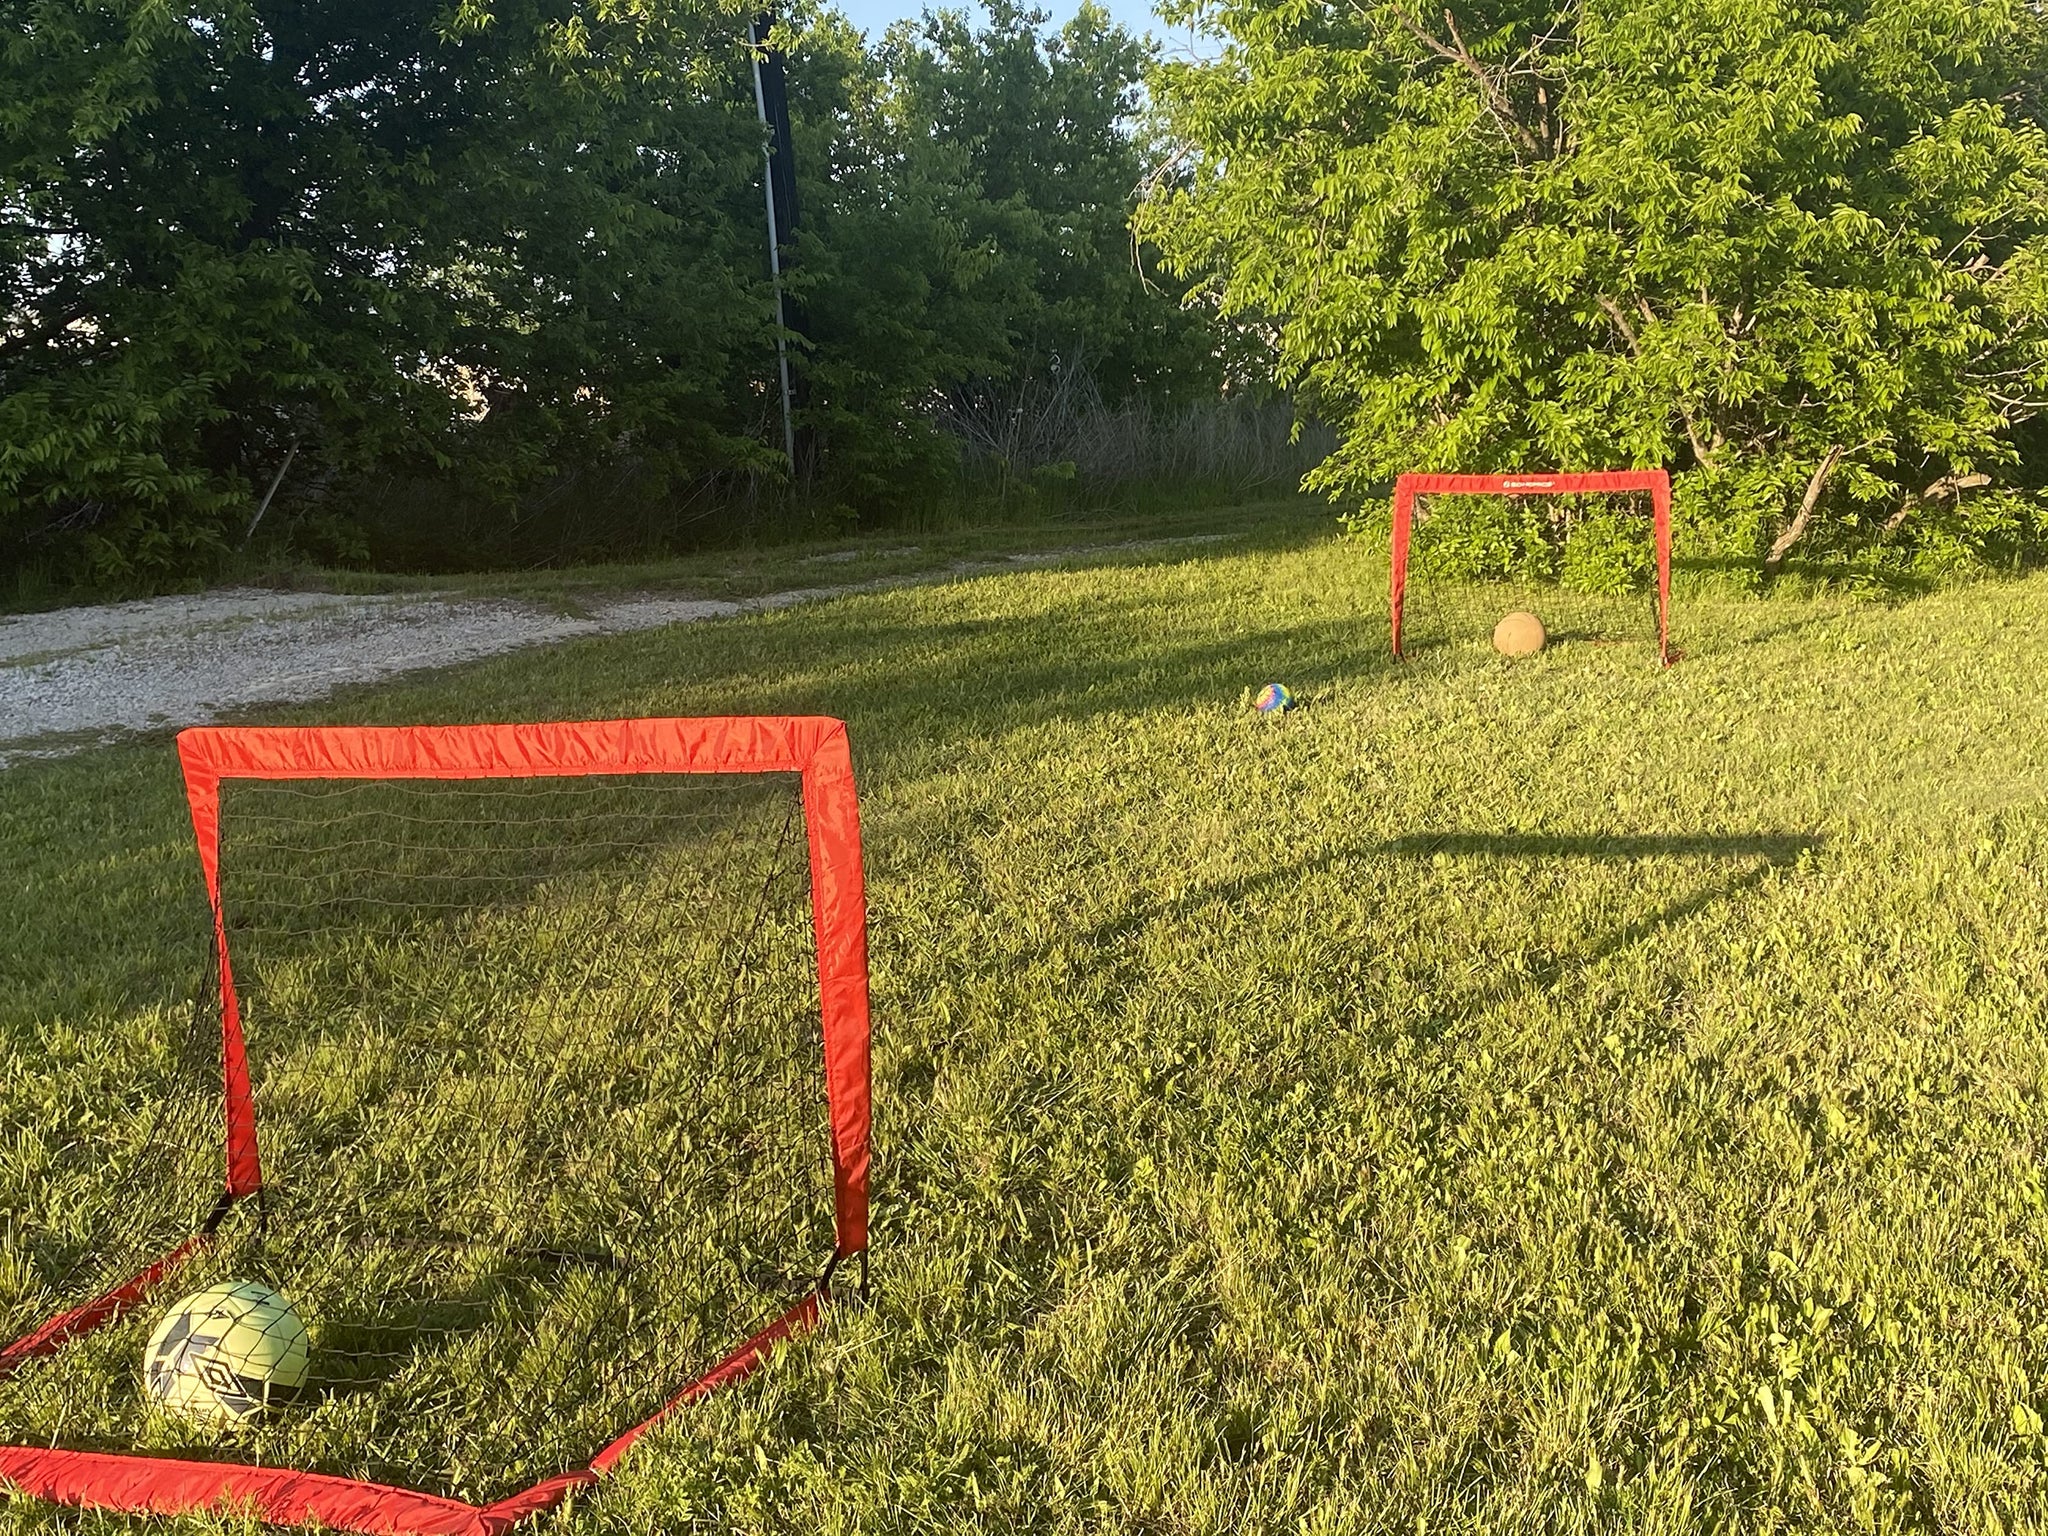 Soccer Goal net Set of 2,Backyards,Garden,Park, Beach, For Kid's, 4'x2.6'